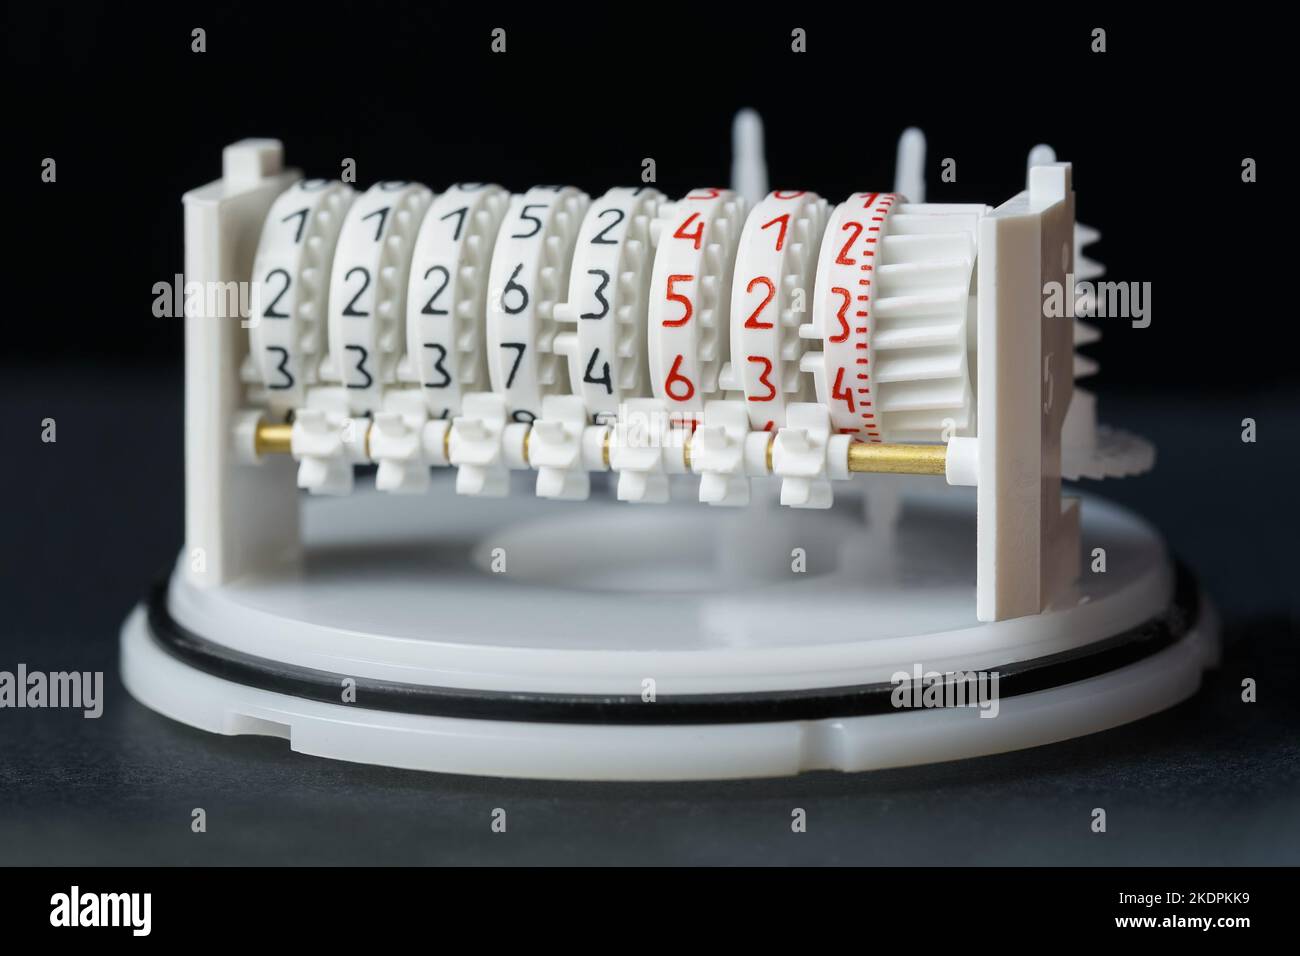 Die innere Struktur eines mechanischen Zählers verschiedener physikalischer Größen. Makrofotografie. Stockfoto